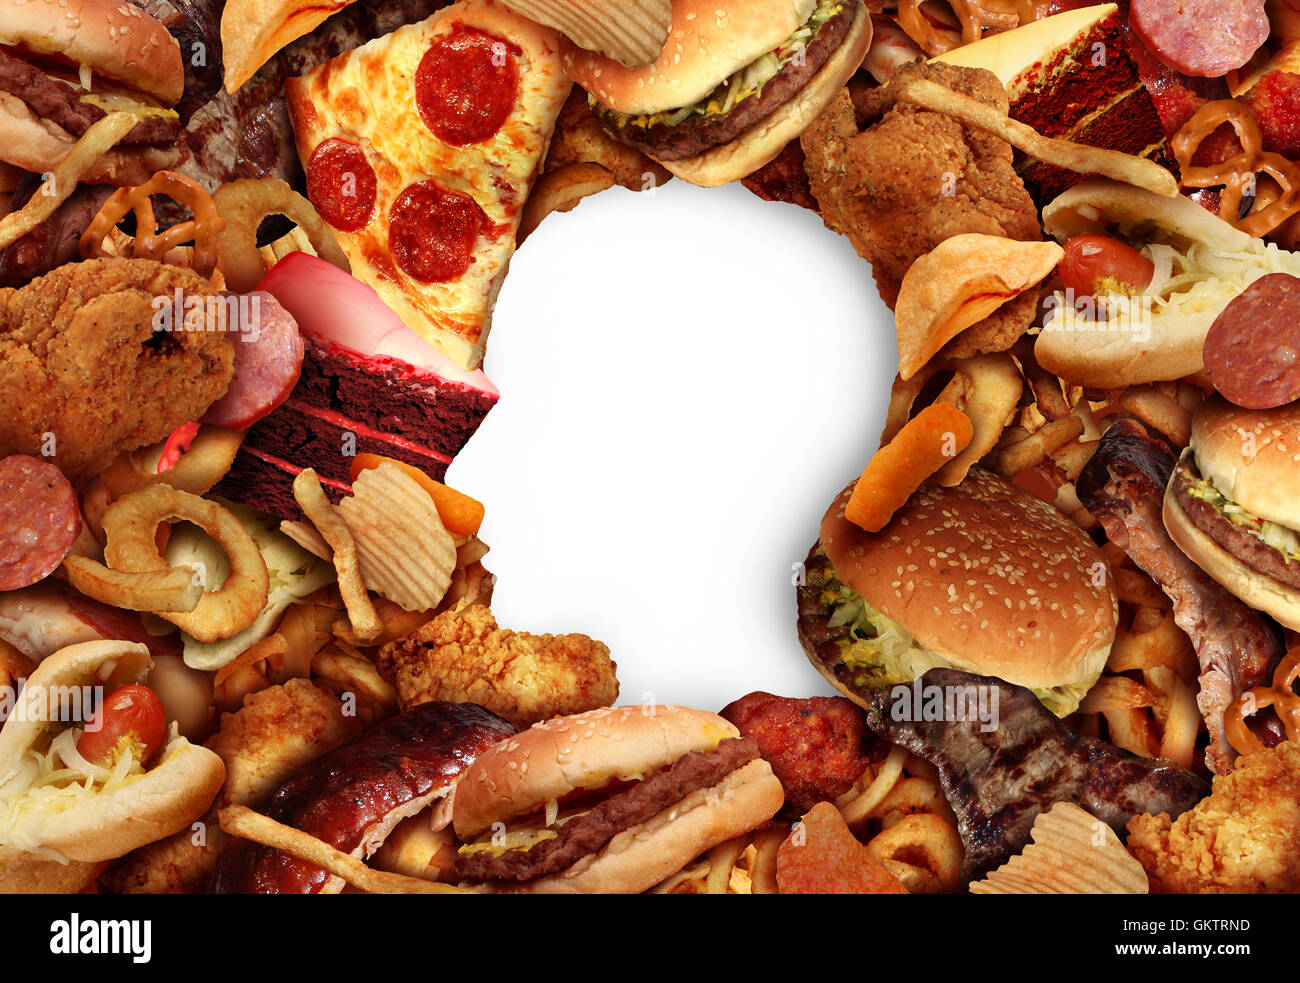 Manger des aliments gras et mauvaise alimentation concept santé avec un groupe de fast-food graisseux dans la forme d'une tête humaine symbole de la nutrition et de l'icône de style de vie dangereux d'accoutumance à risqué d'en-cas dans un style 3D illustration. Banque D'Images